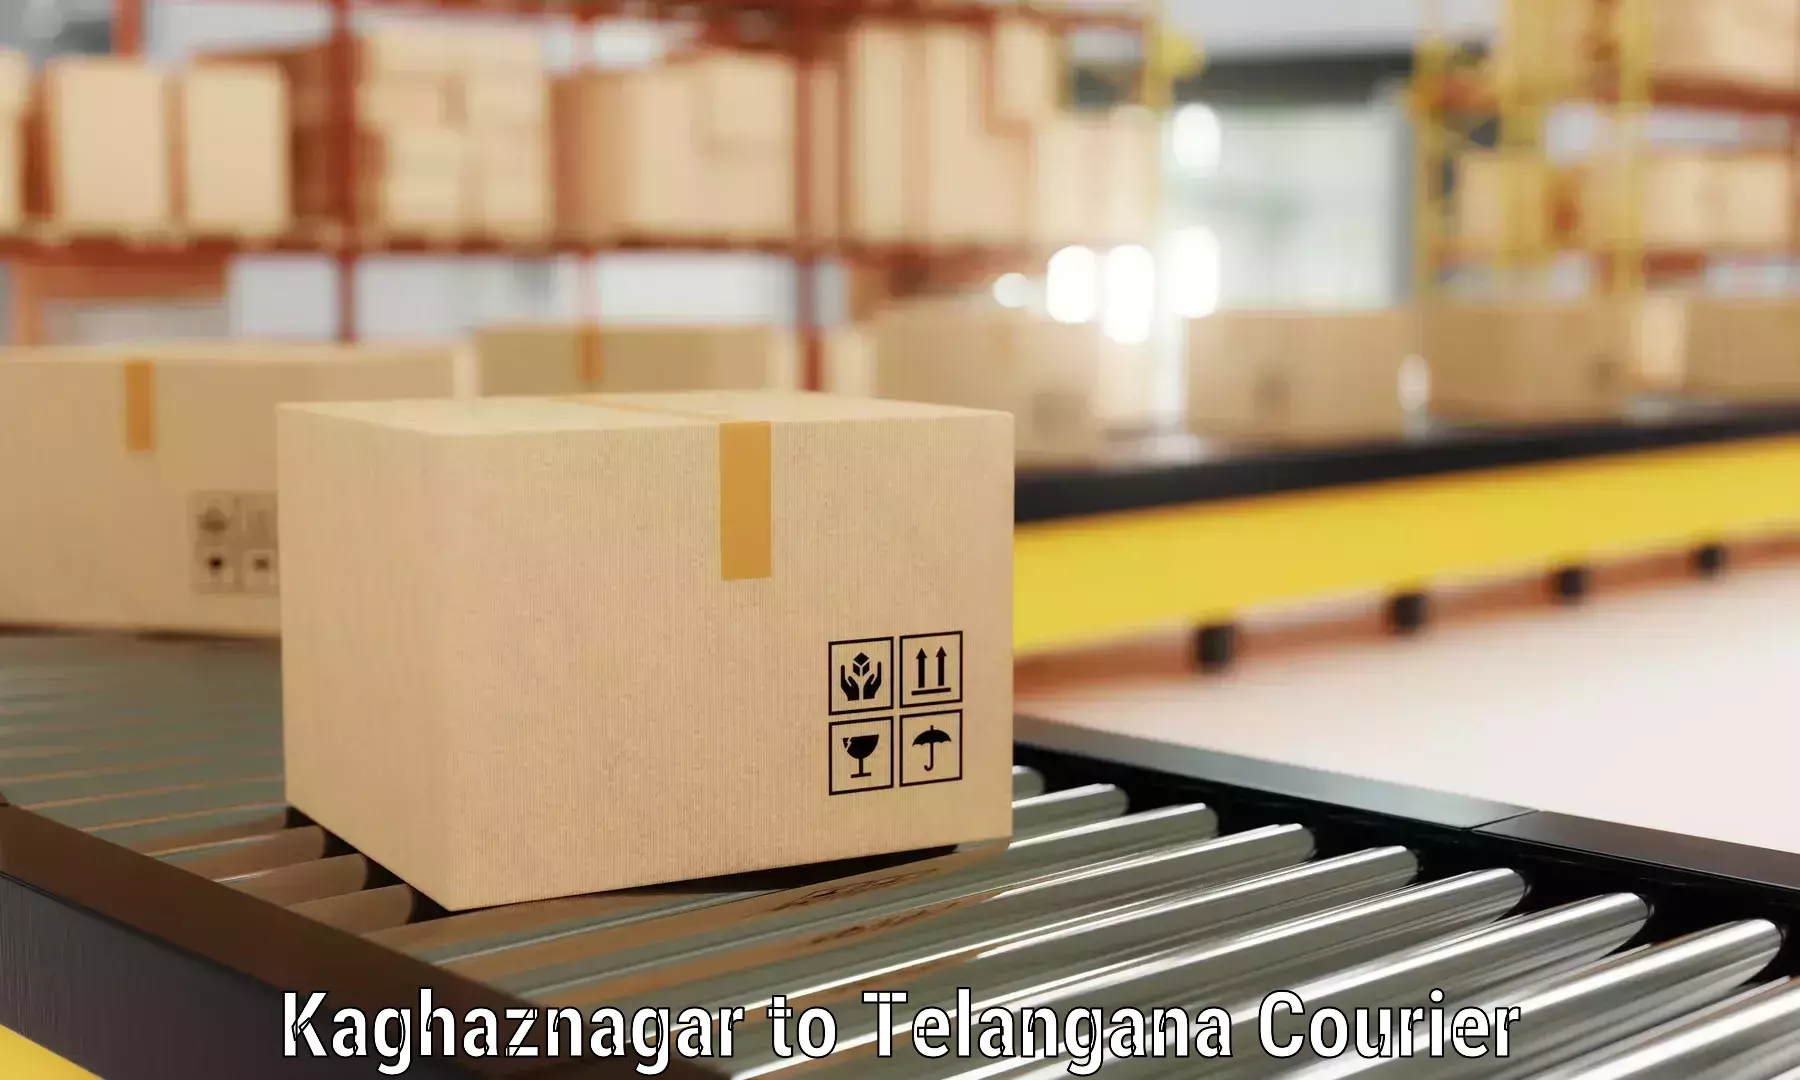 Furniture transport solutions Kaghaznagar to Kothakota